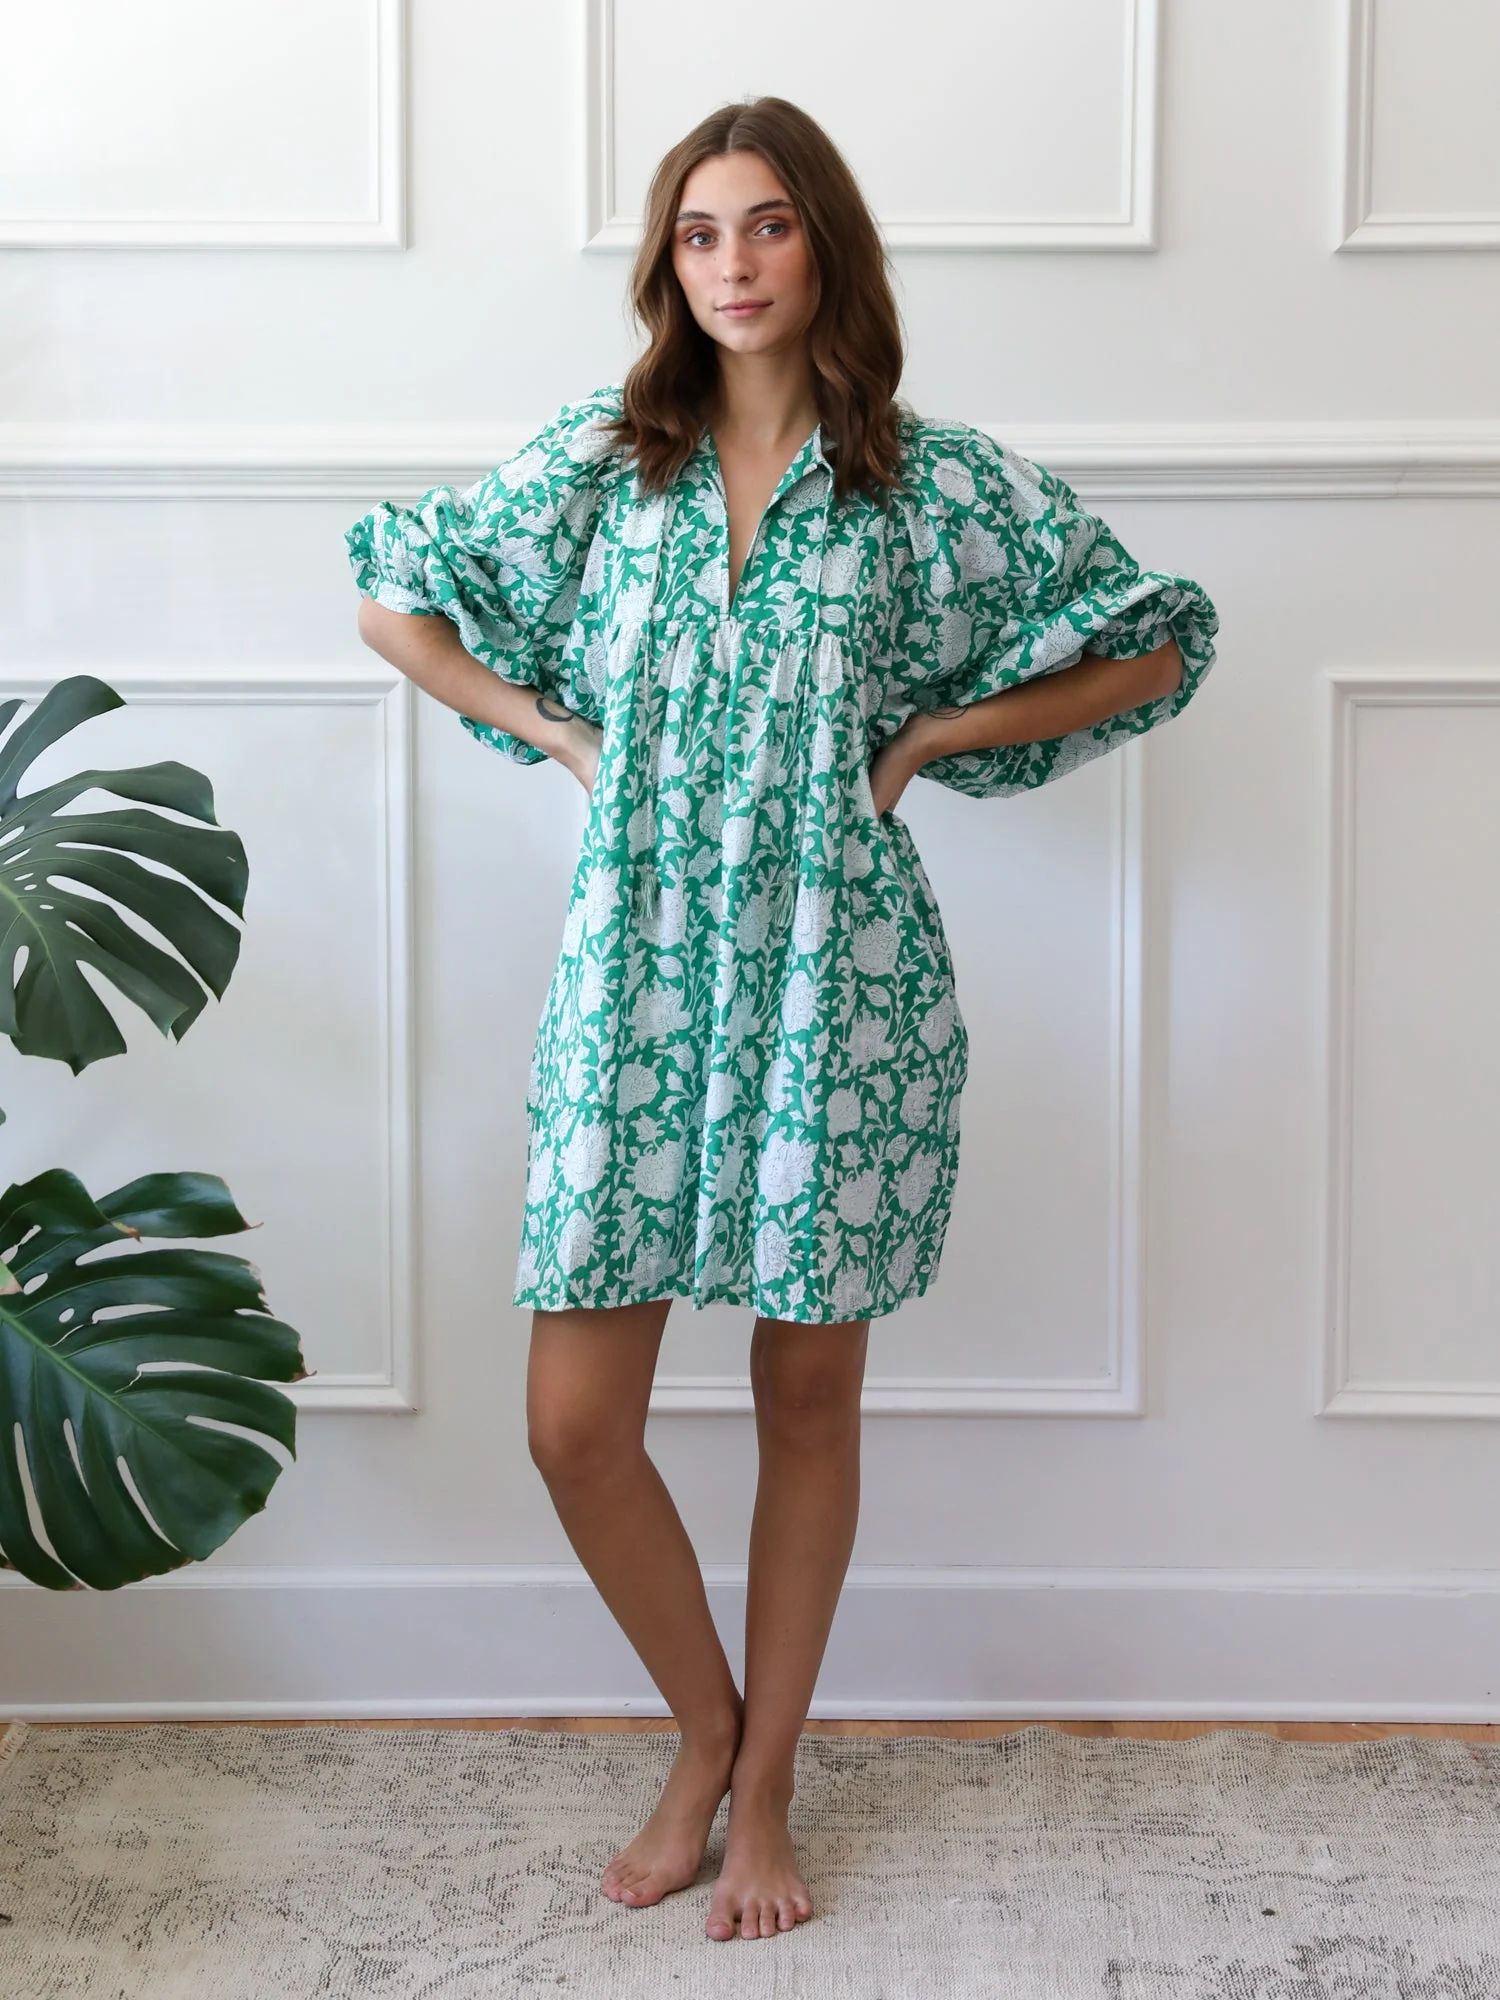 Shop Mille - Daisy Dress in Green Zinnia | Mille